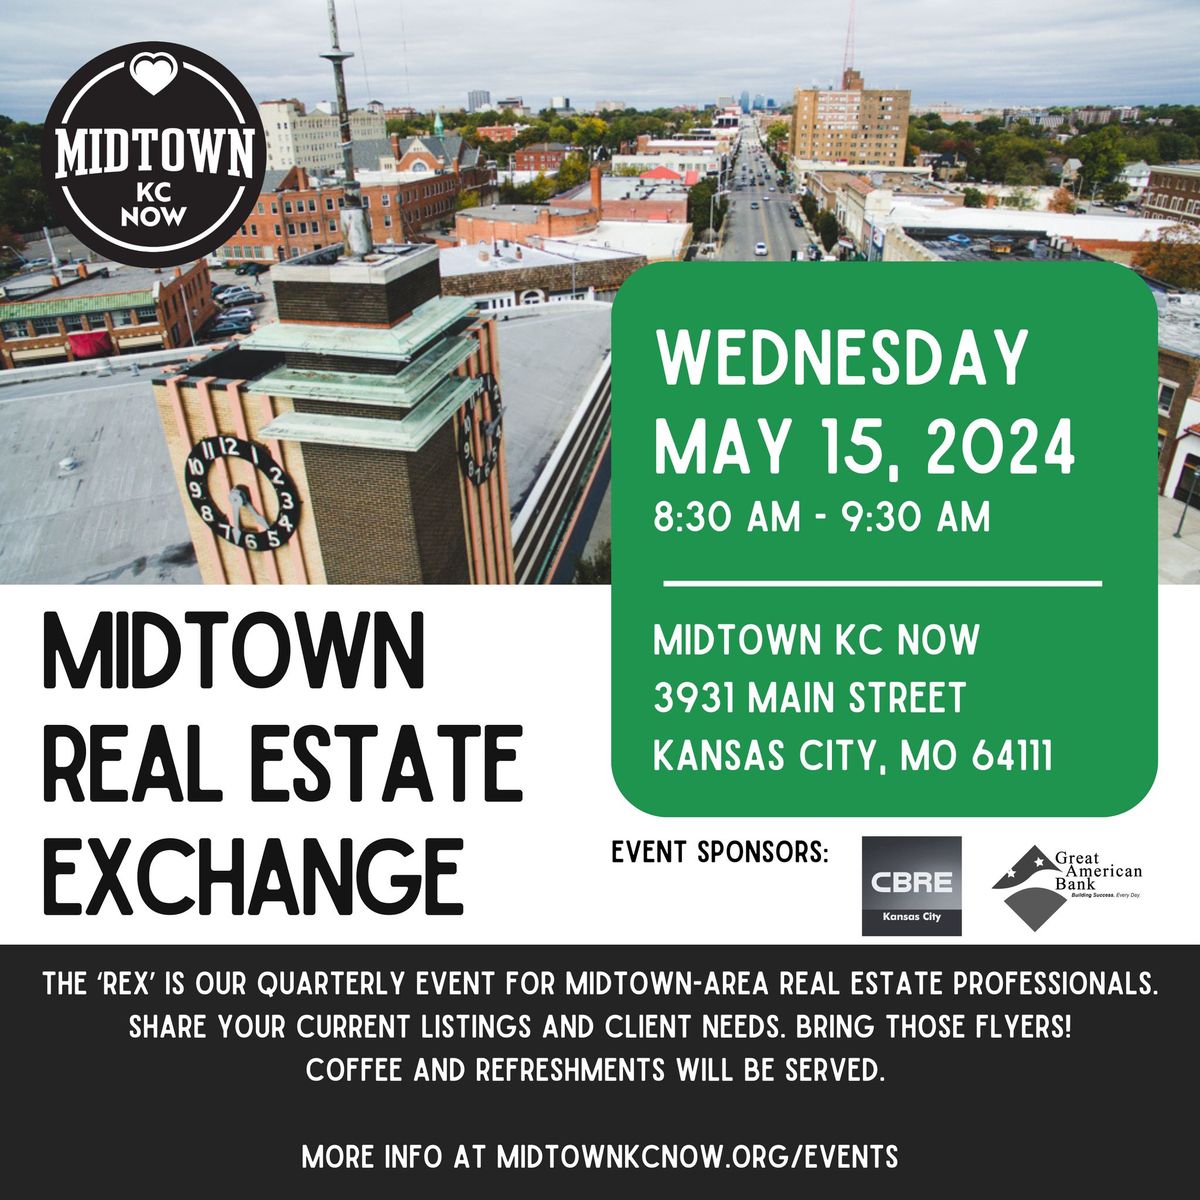 Midtown Real Estate Exchange (REX)